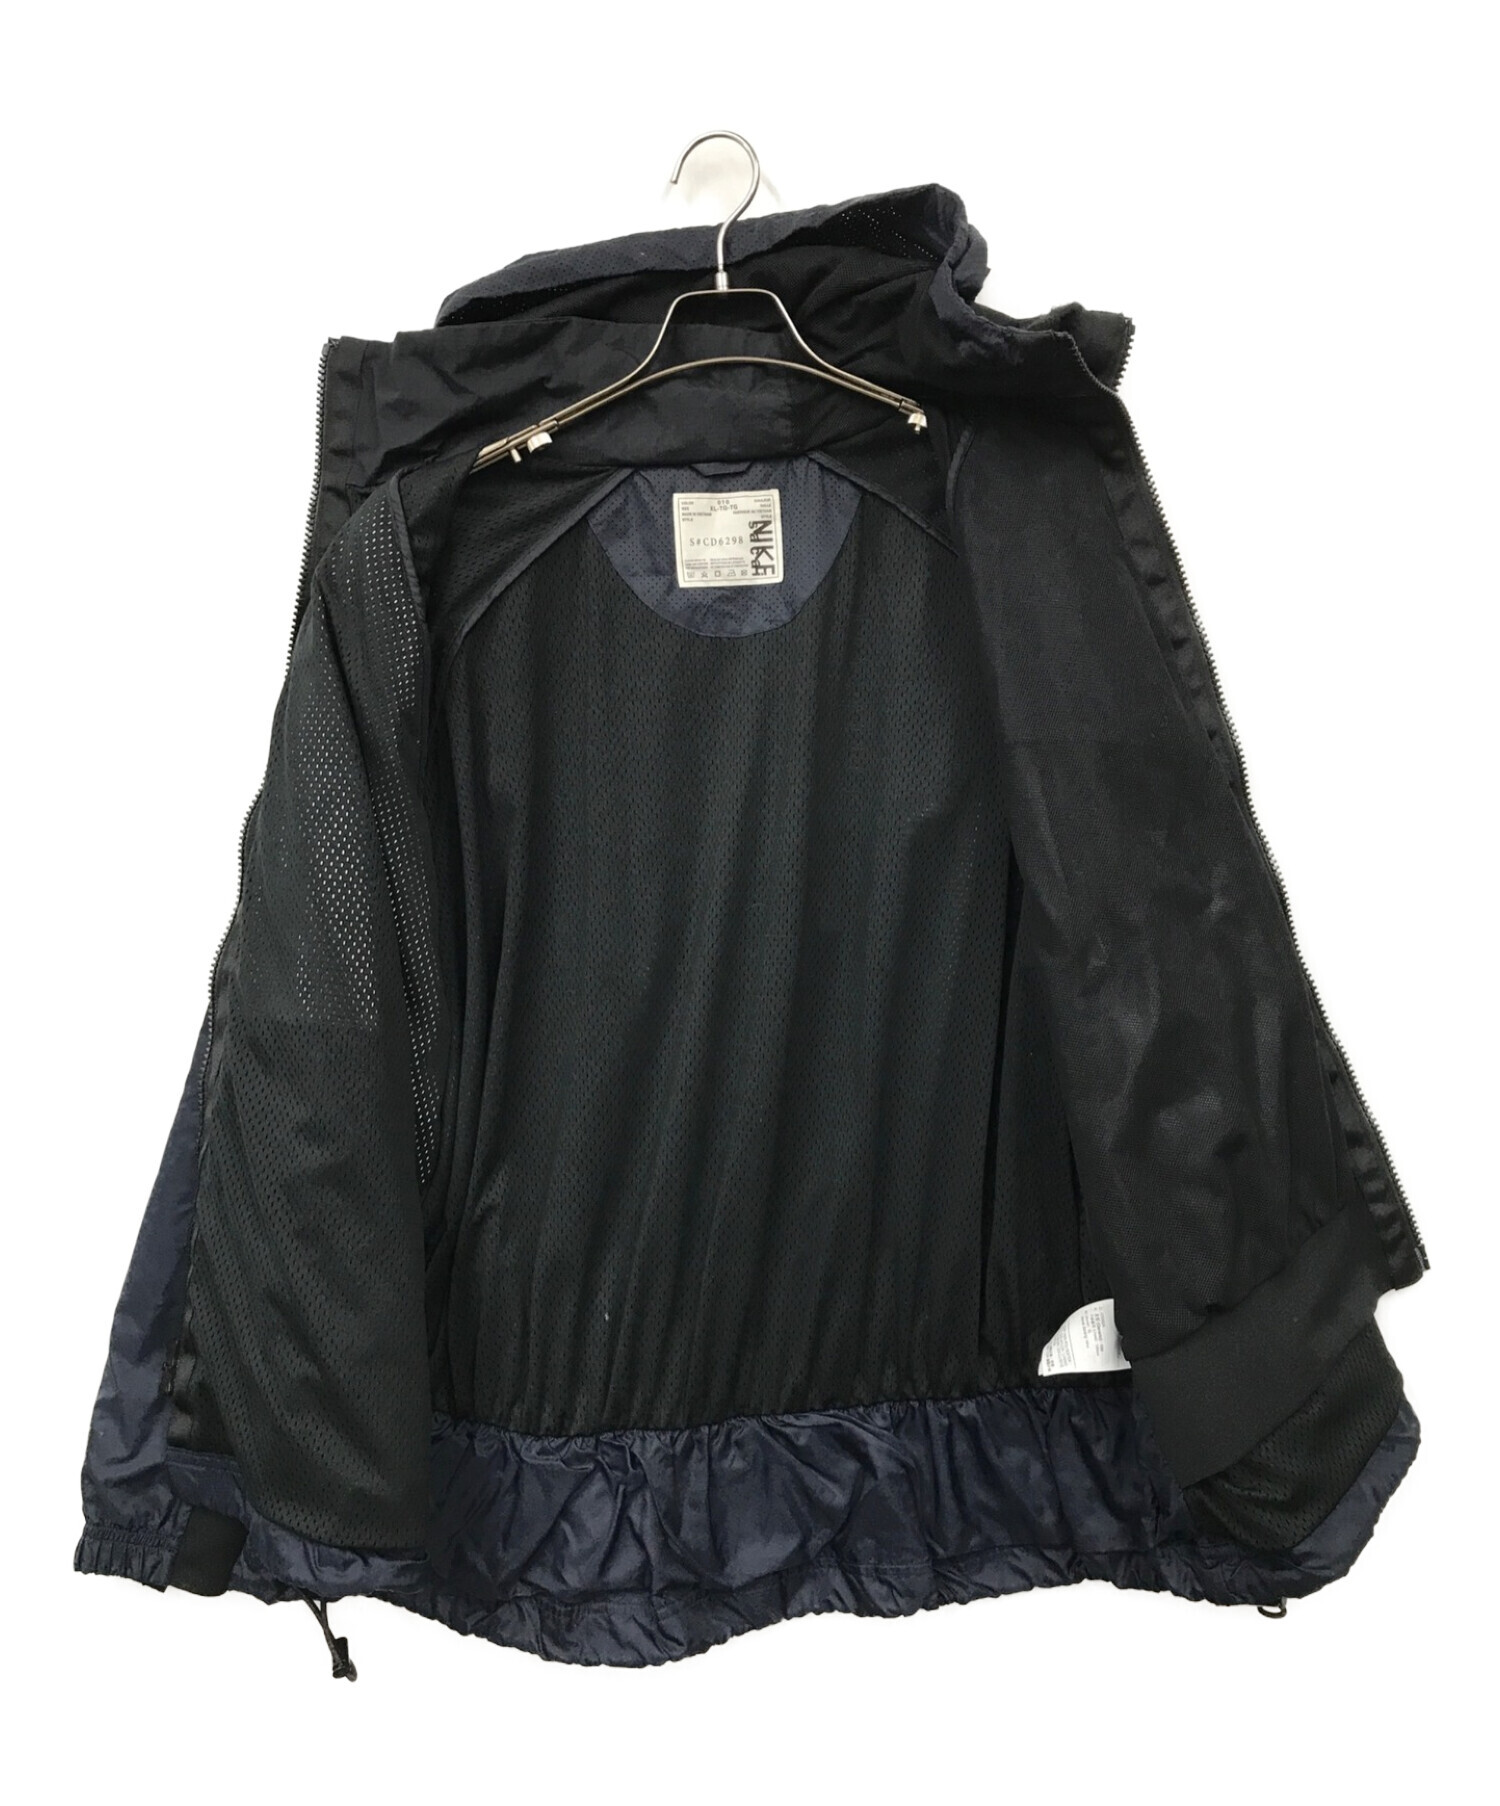 sacai (サカイ) NIKE (ナイキ) Hooded Anorak jacket（フードアノラックジャケット） ネイビー サイズ:XL